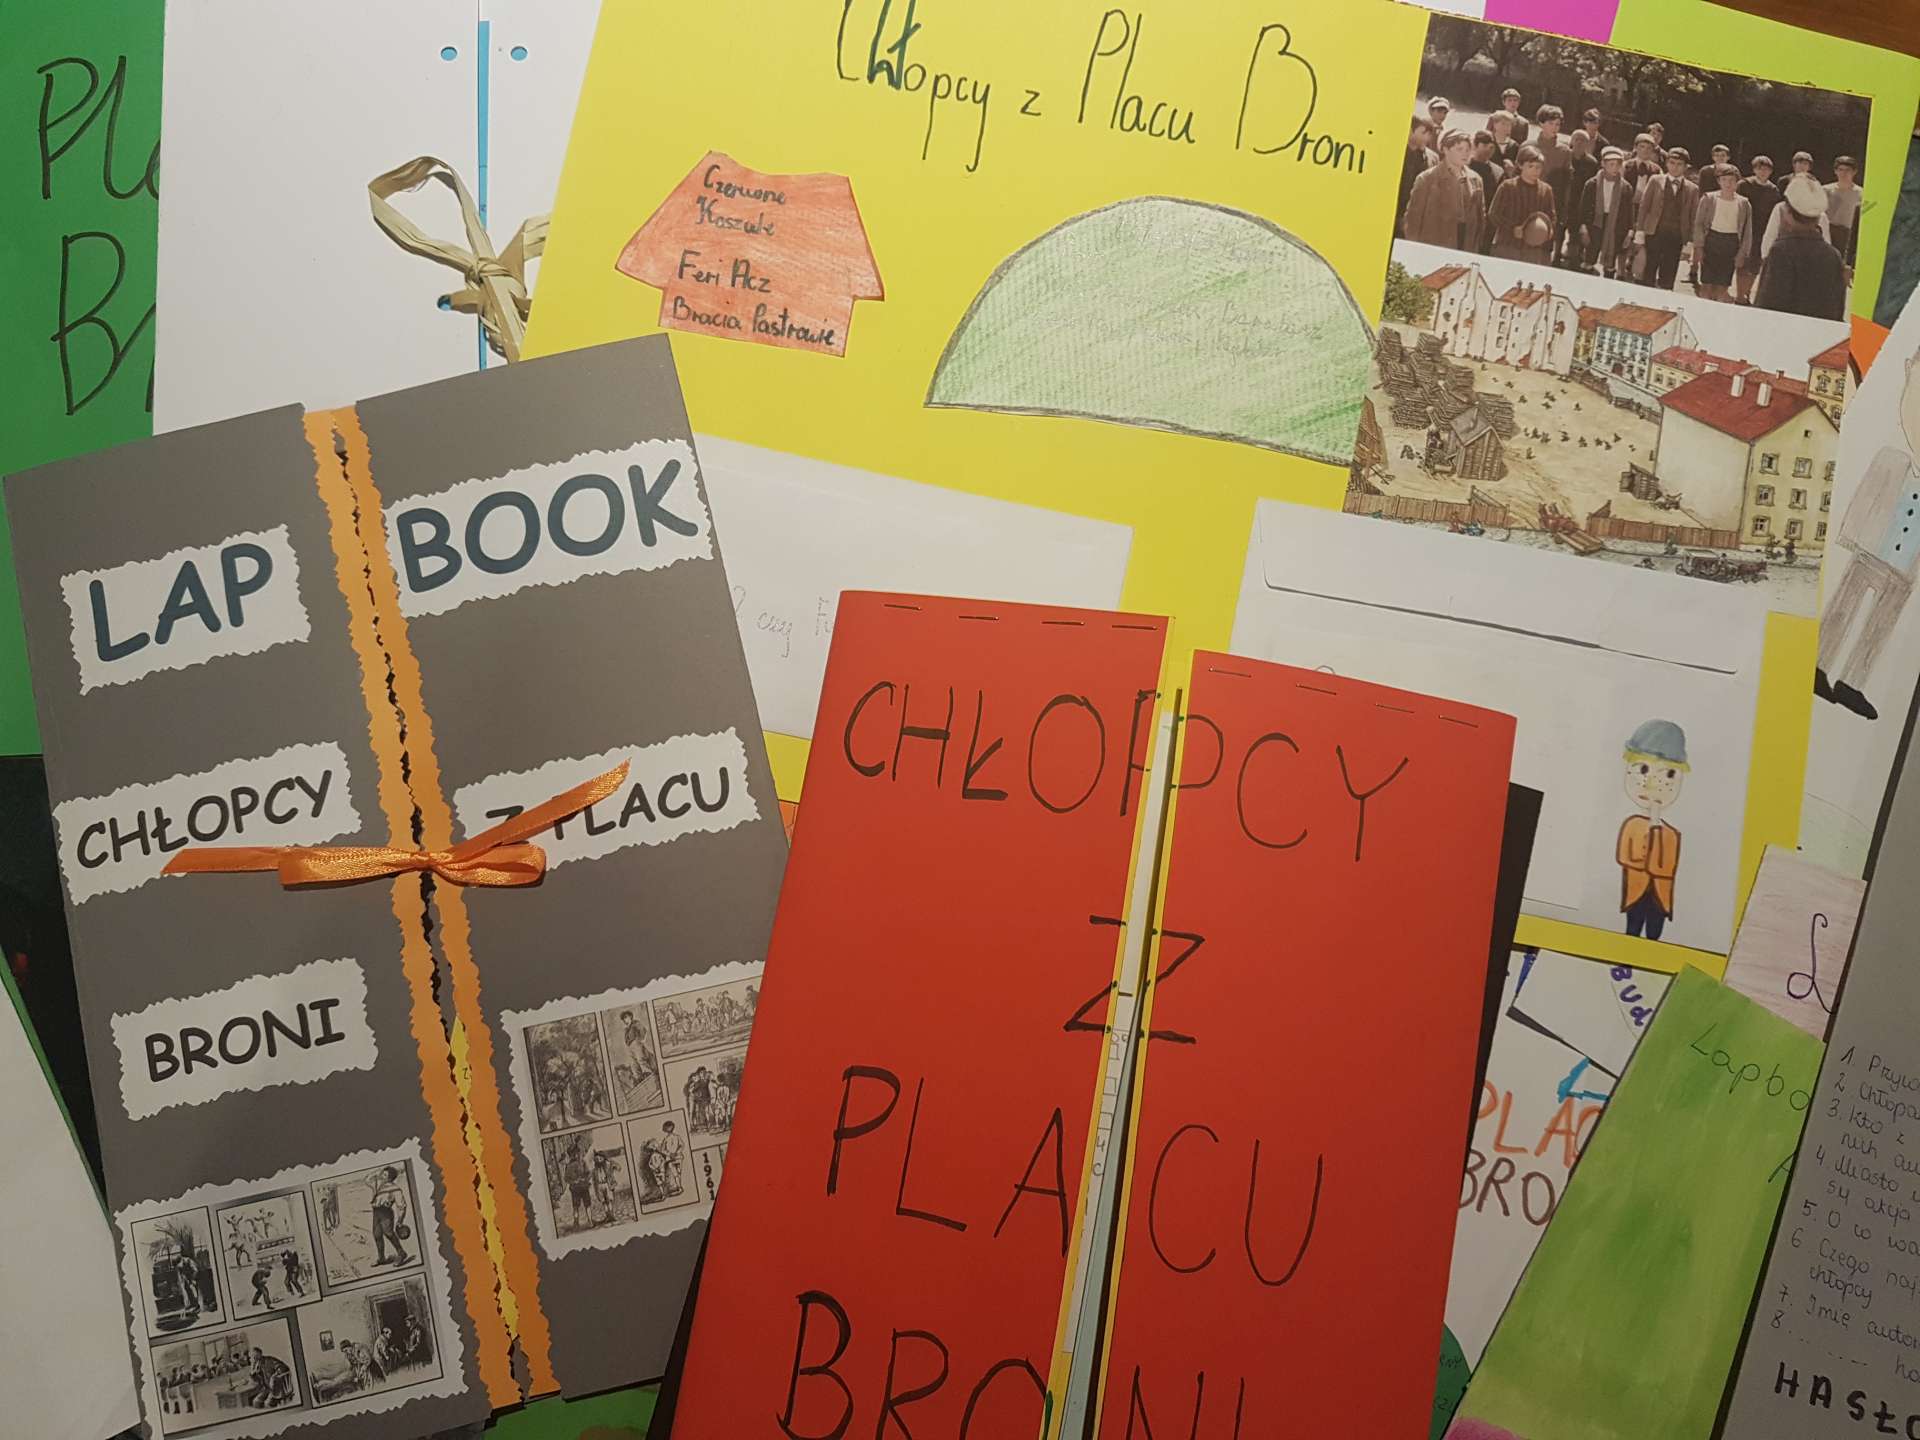 Chłopcy Z Placu Broni Lapbook Lektura może być inspiracją! - Szkoła Podstawowa w Tuliszkowie